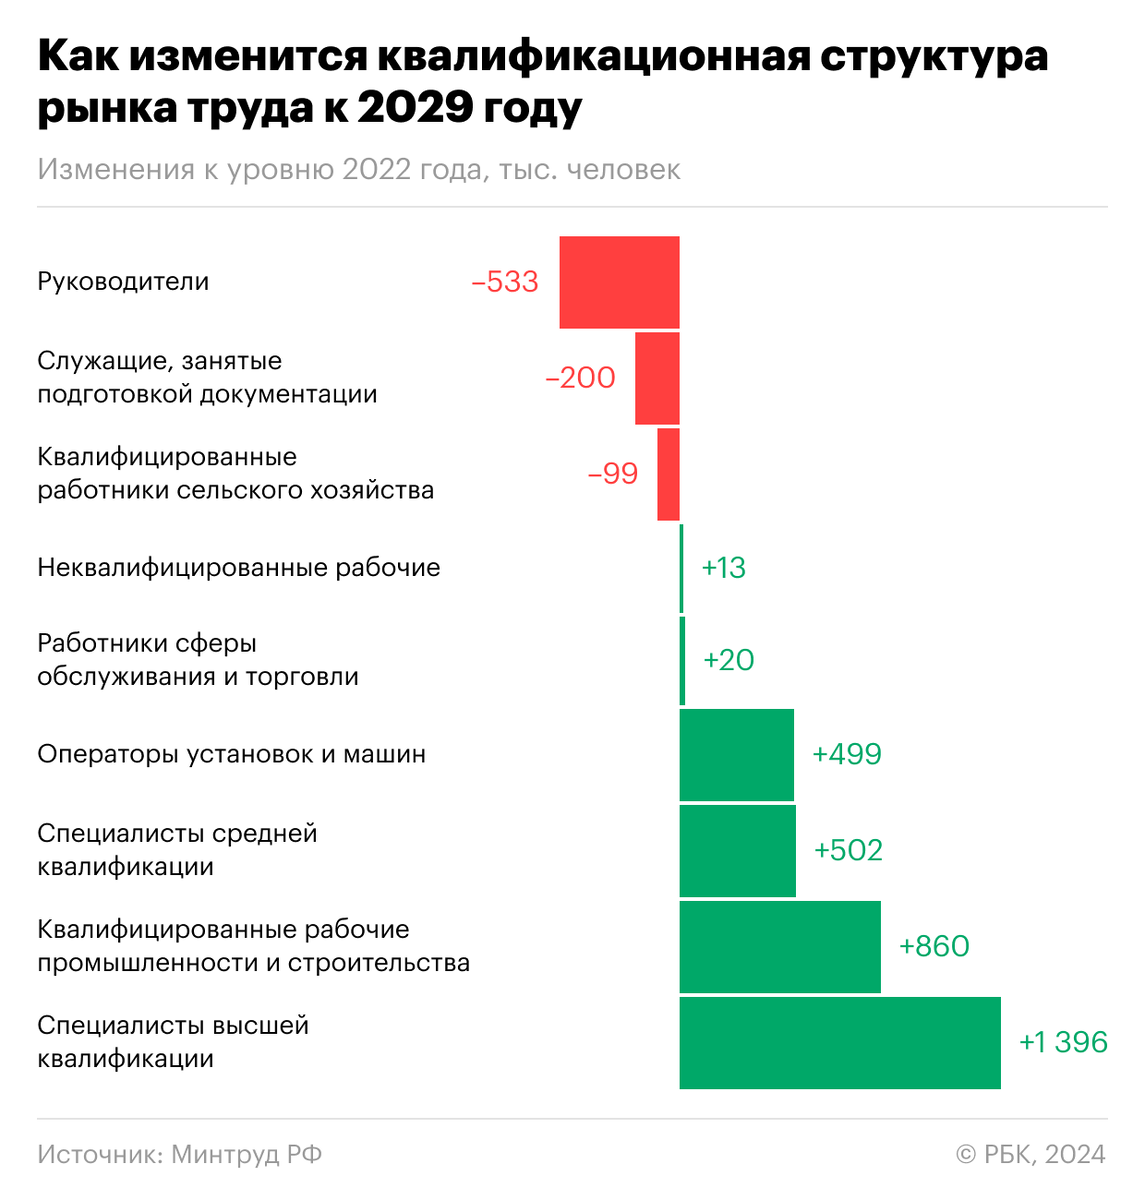 Министерство труда и социальной защиты оценило, как изменится профессионально-квалификационная структура занятых на российском рынке труда к 2029 году.